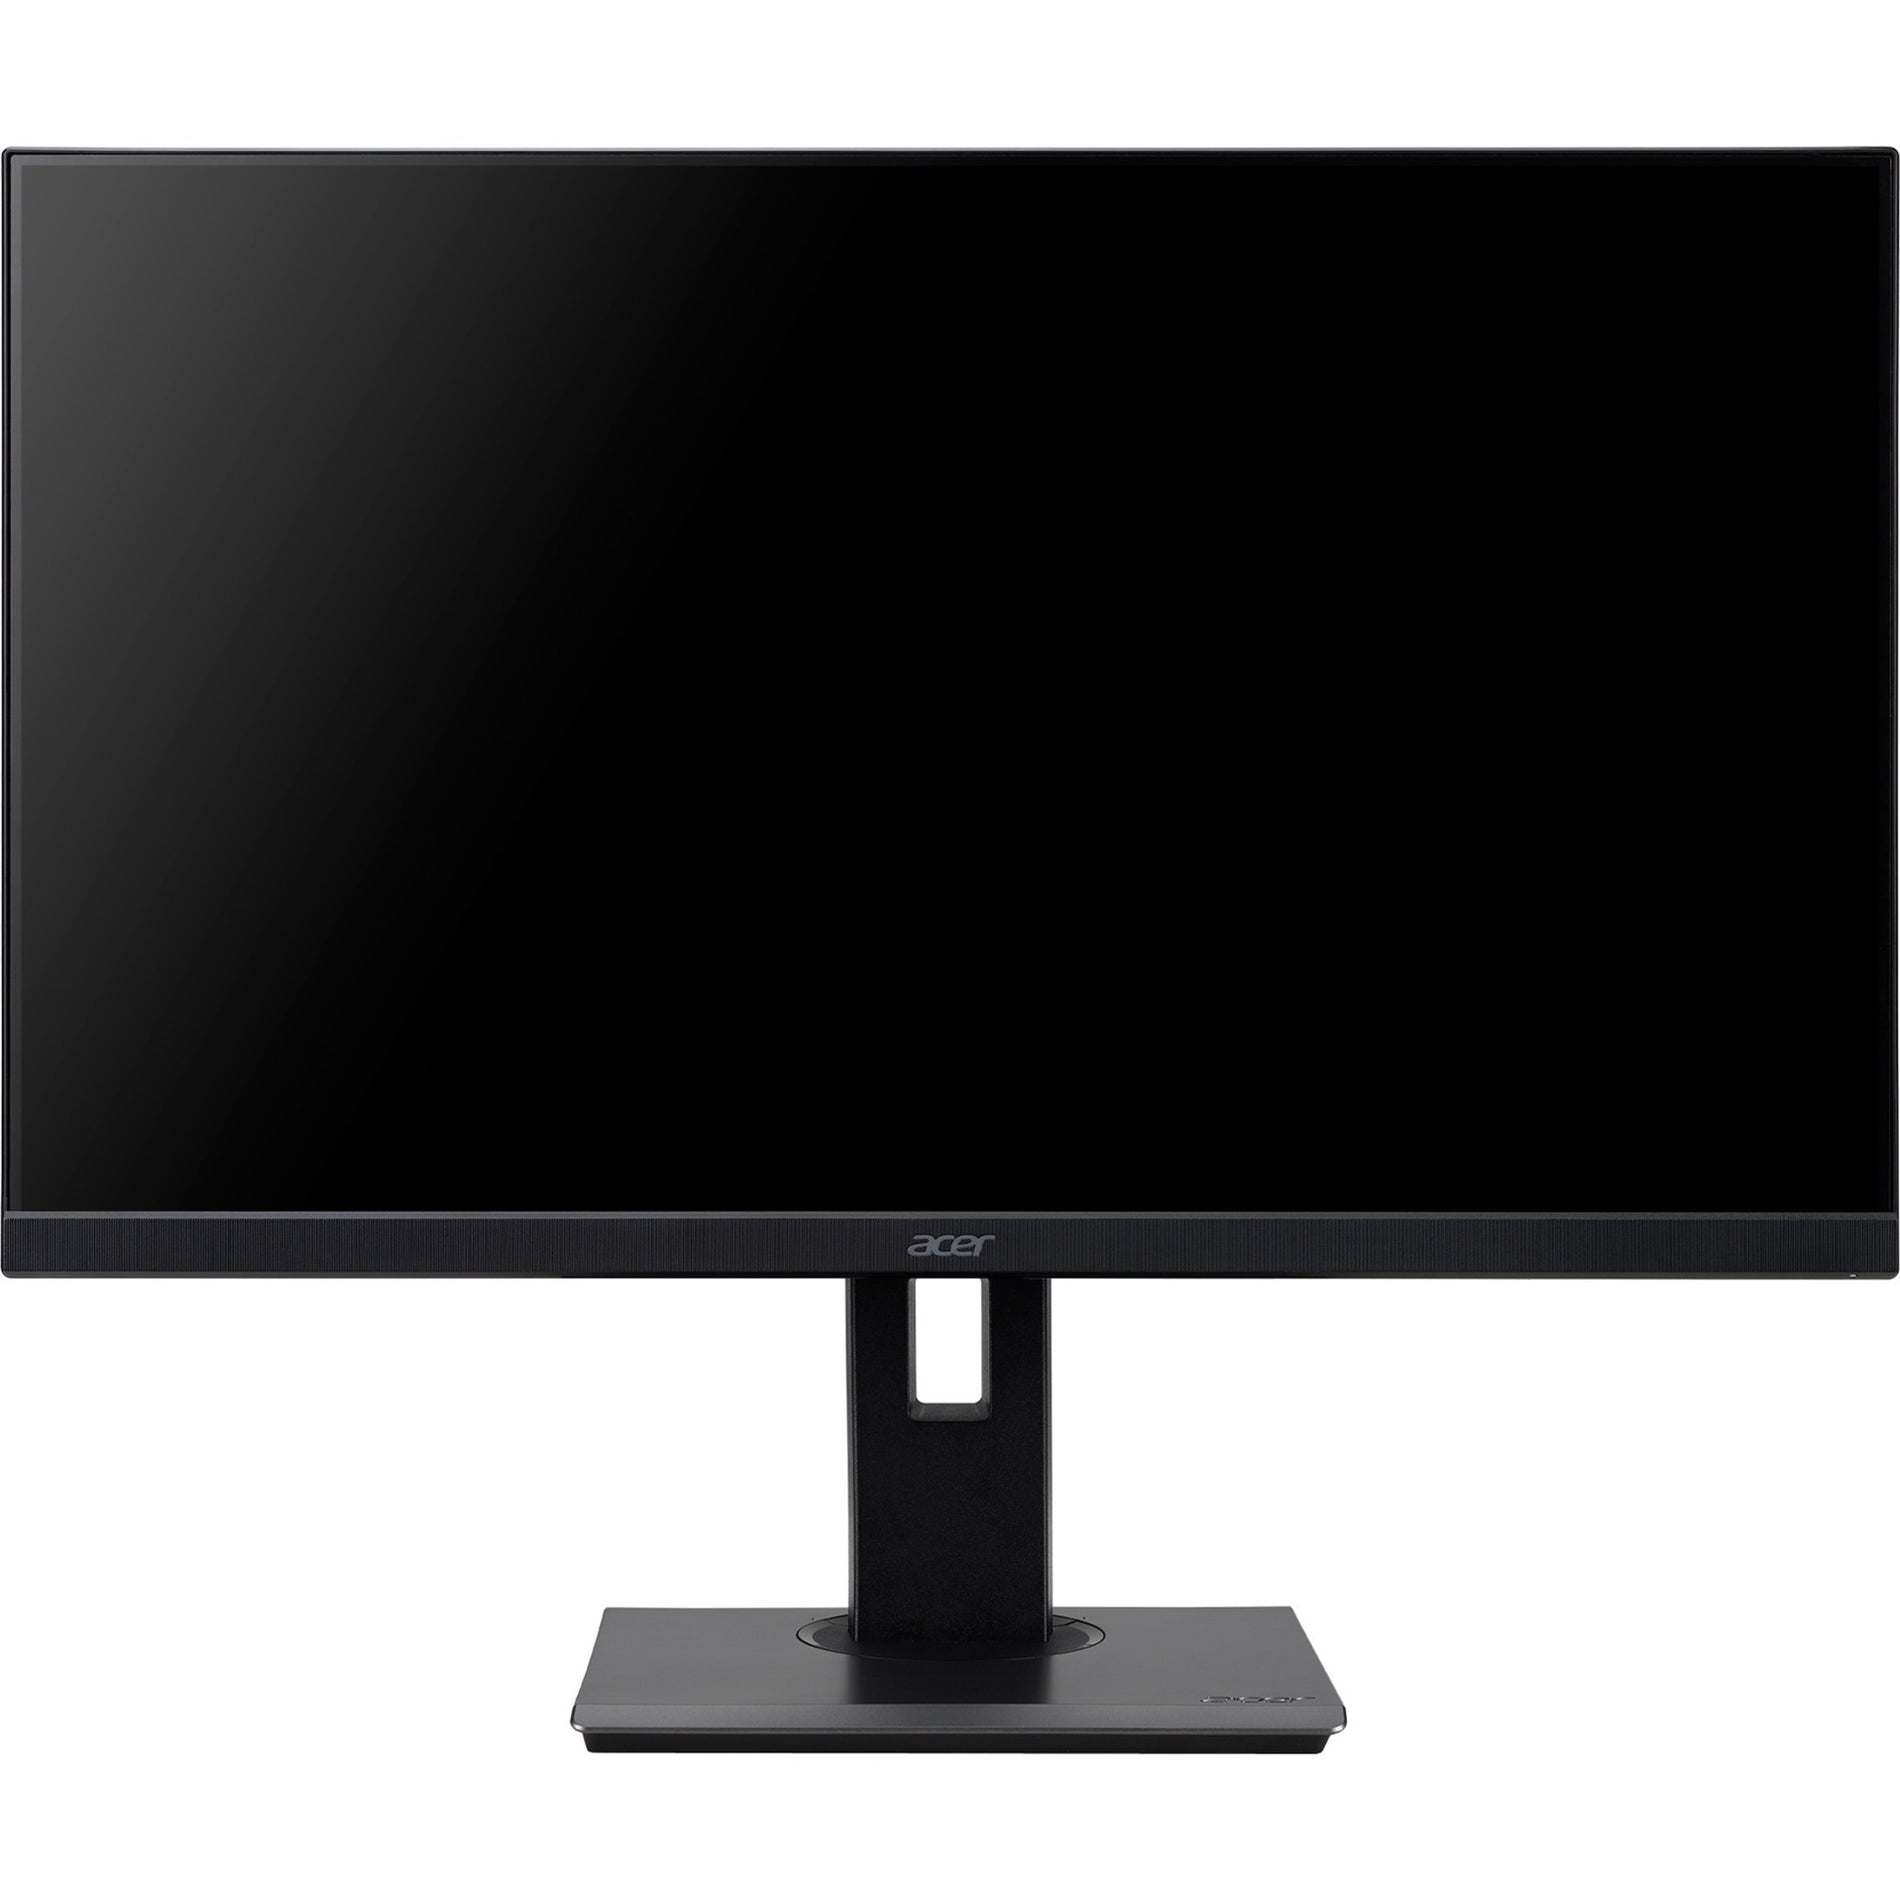 Acer UM.WB7AA.B02 B227Q B 21.5" Full HD LCD Monitor, Black, Adaptive Sync, USB Hub